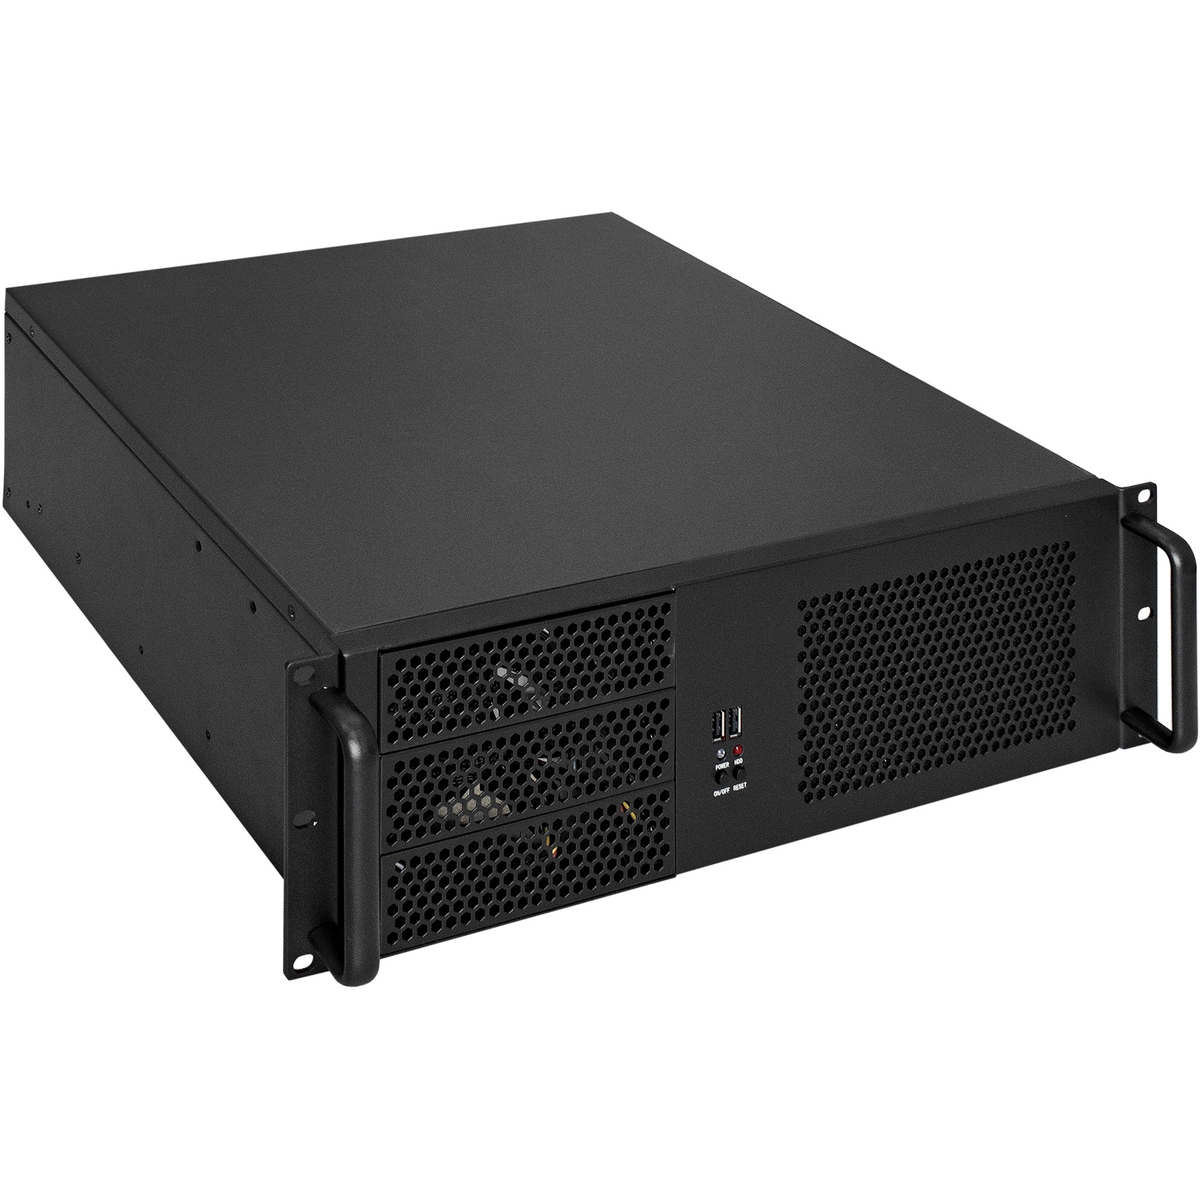 Серверный корпус ExeGate Pro 3U390-08/800RADS